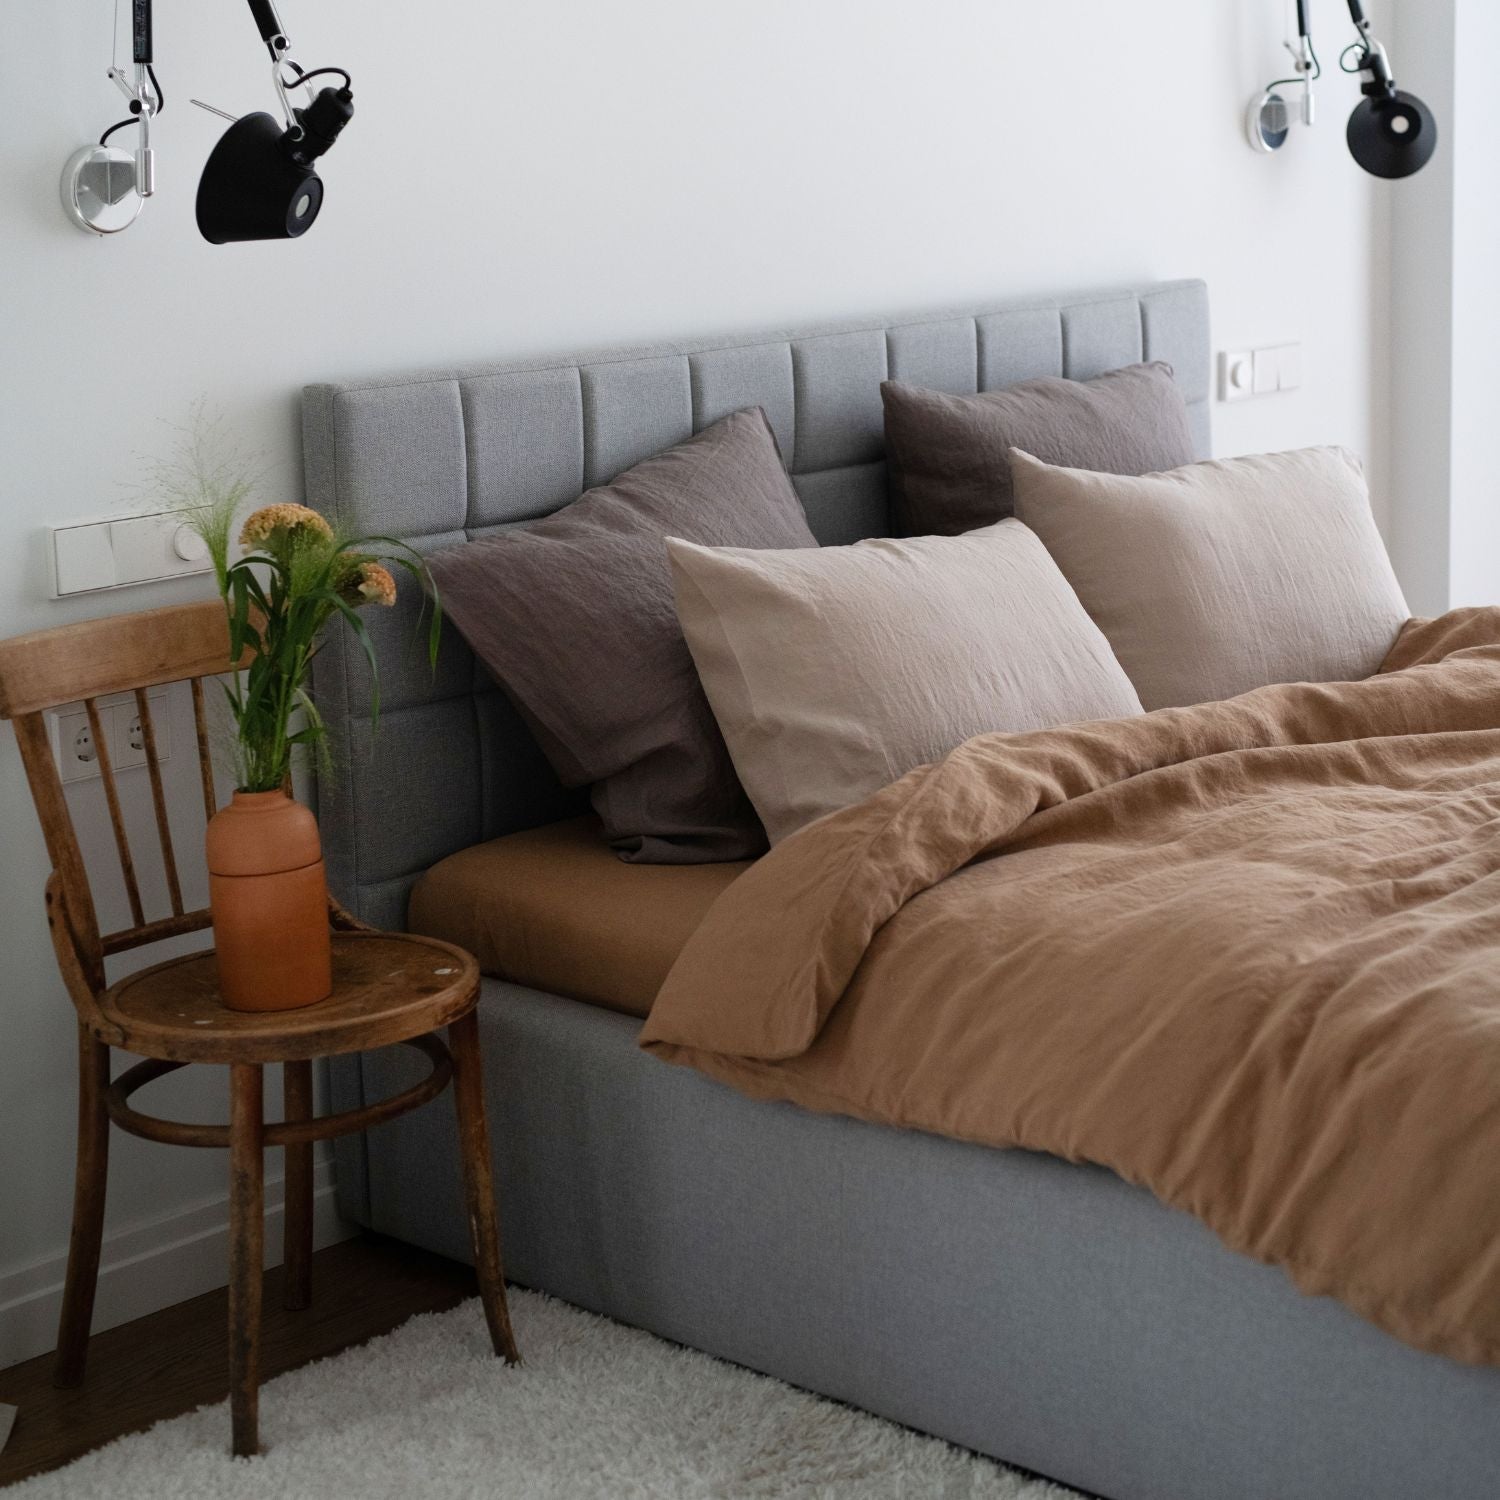 Hellin Haven Hemp Pillowcase - Luxurious Linen Comfort